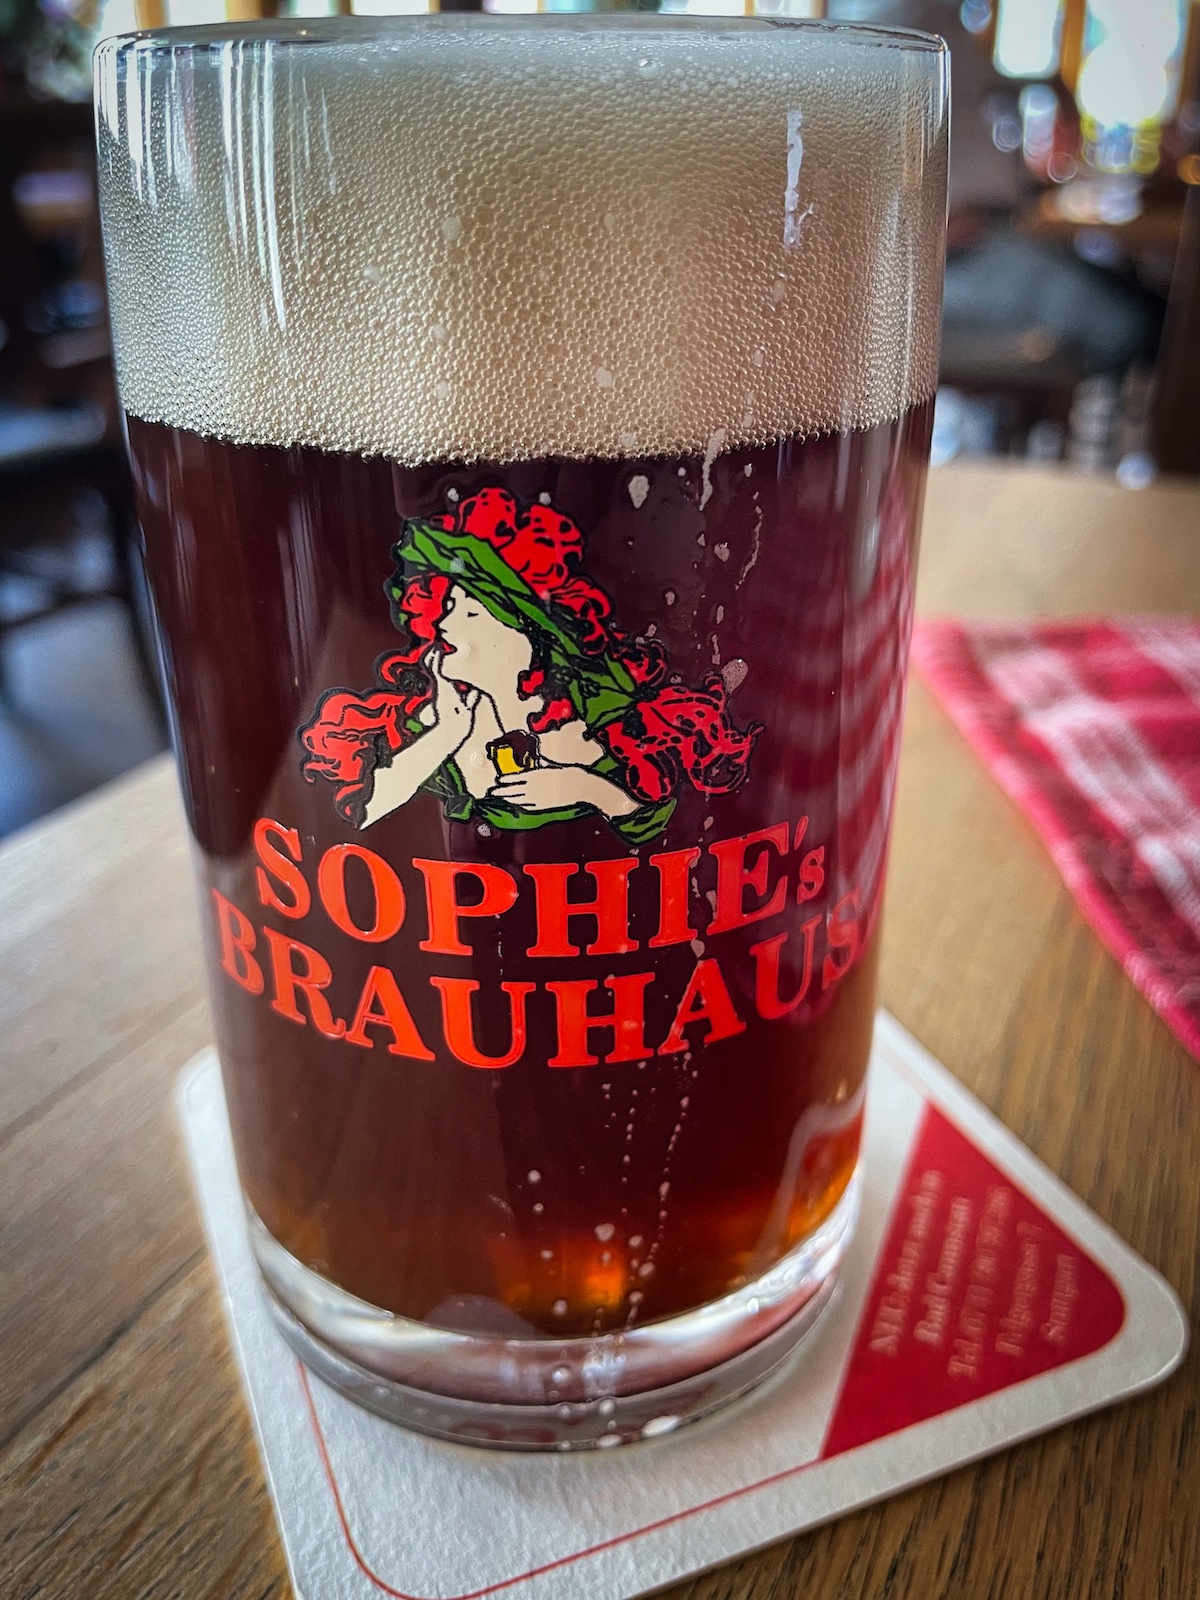 Schwarzbier bij Sophie's Brauhaus in Stuttgart